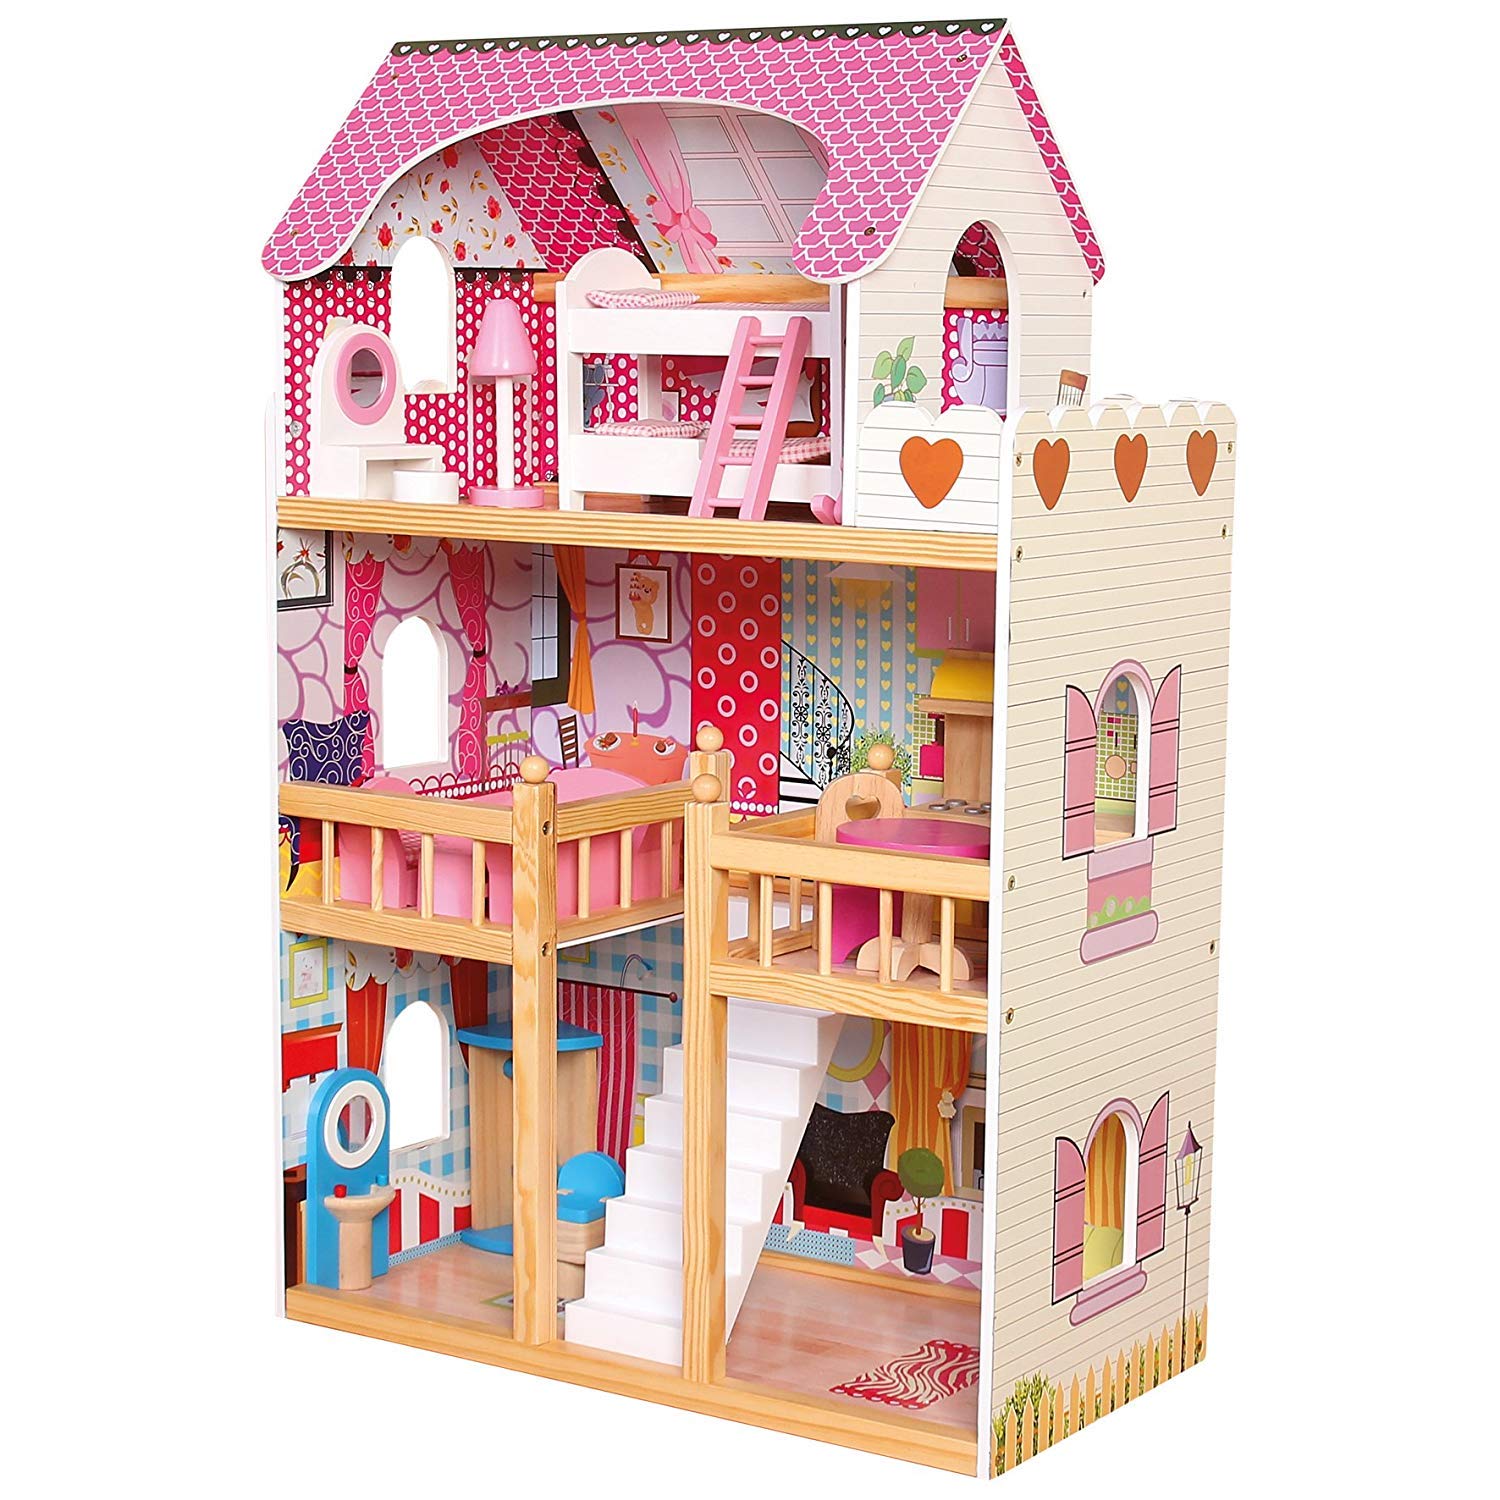 Кукольный дом куклы. Кукольный дом dh603. Кукольный домик dh606. Кукольный домик Рич Фэмили. Kidkraft кукольный домик dh606.